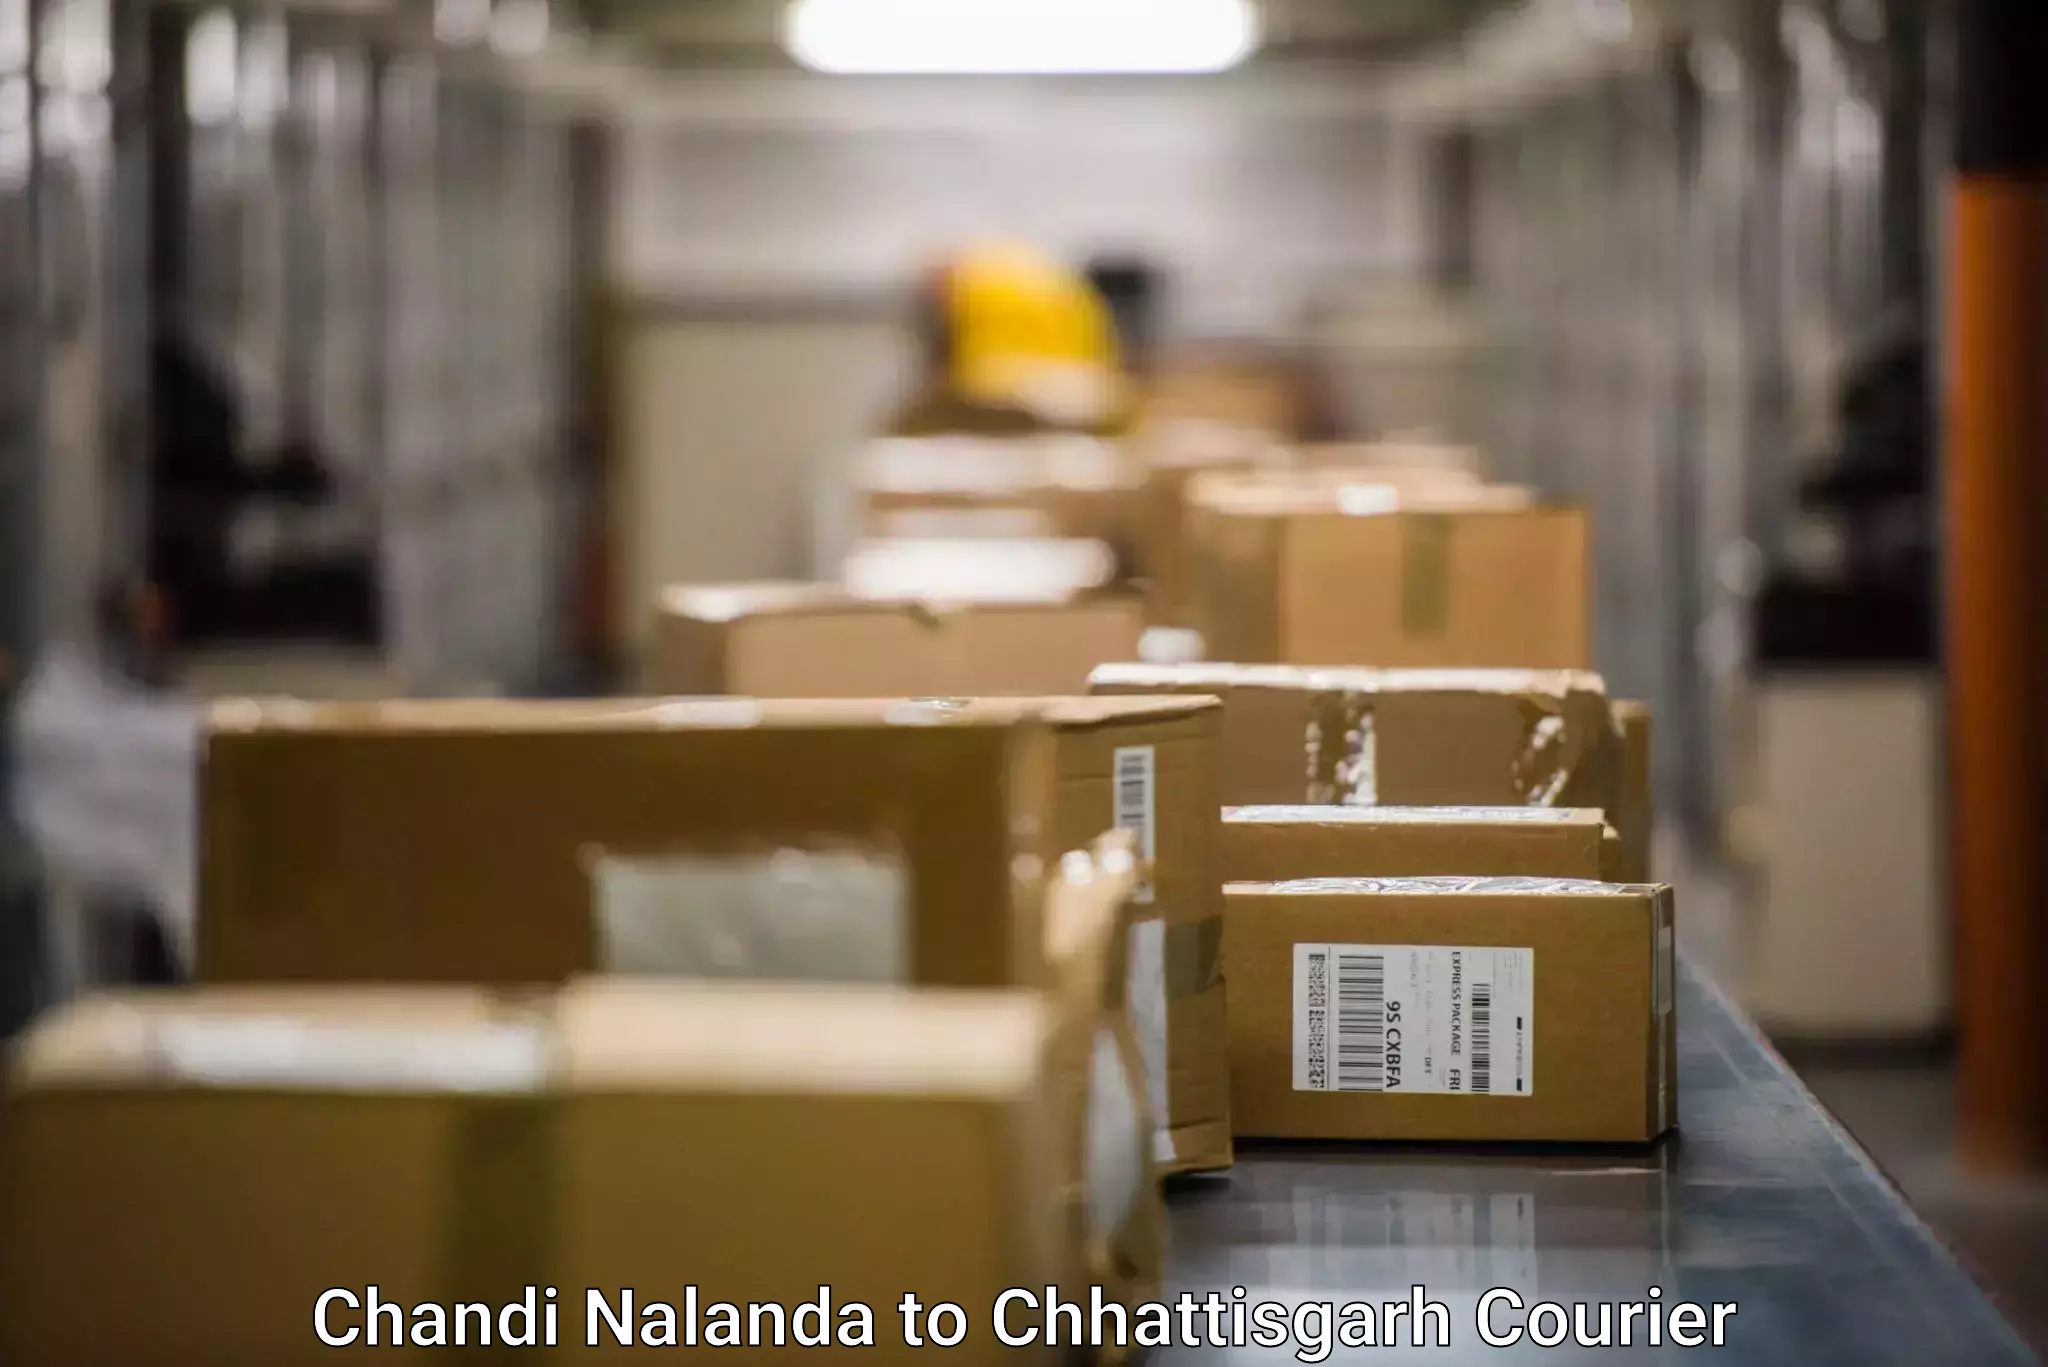 Local delivery service Chandi Nalanda to Chhattisgarh